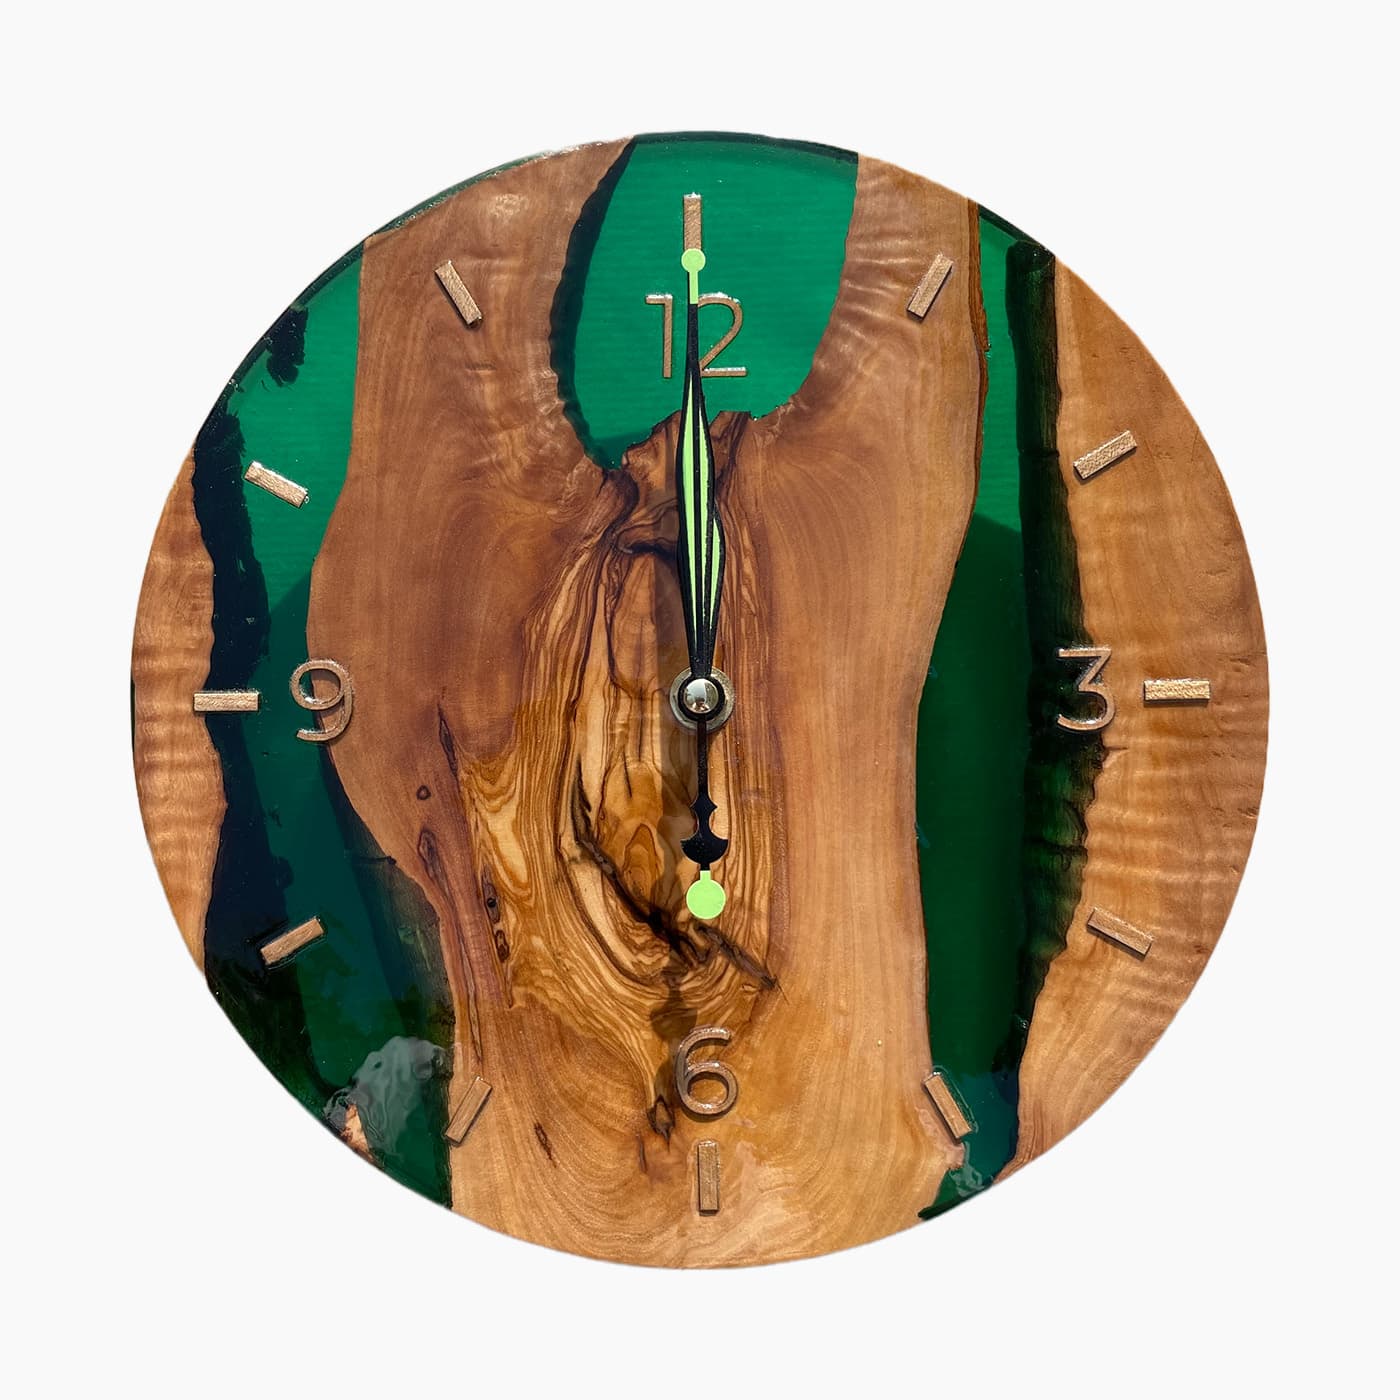 Orologio legno resina - Elemento - Arredamento Made in Italy